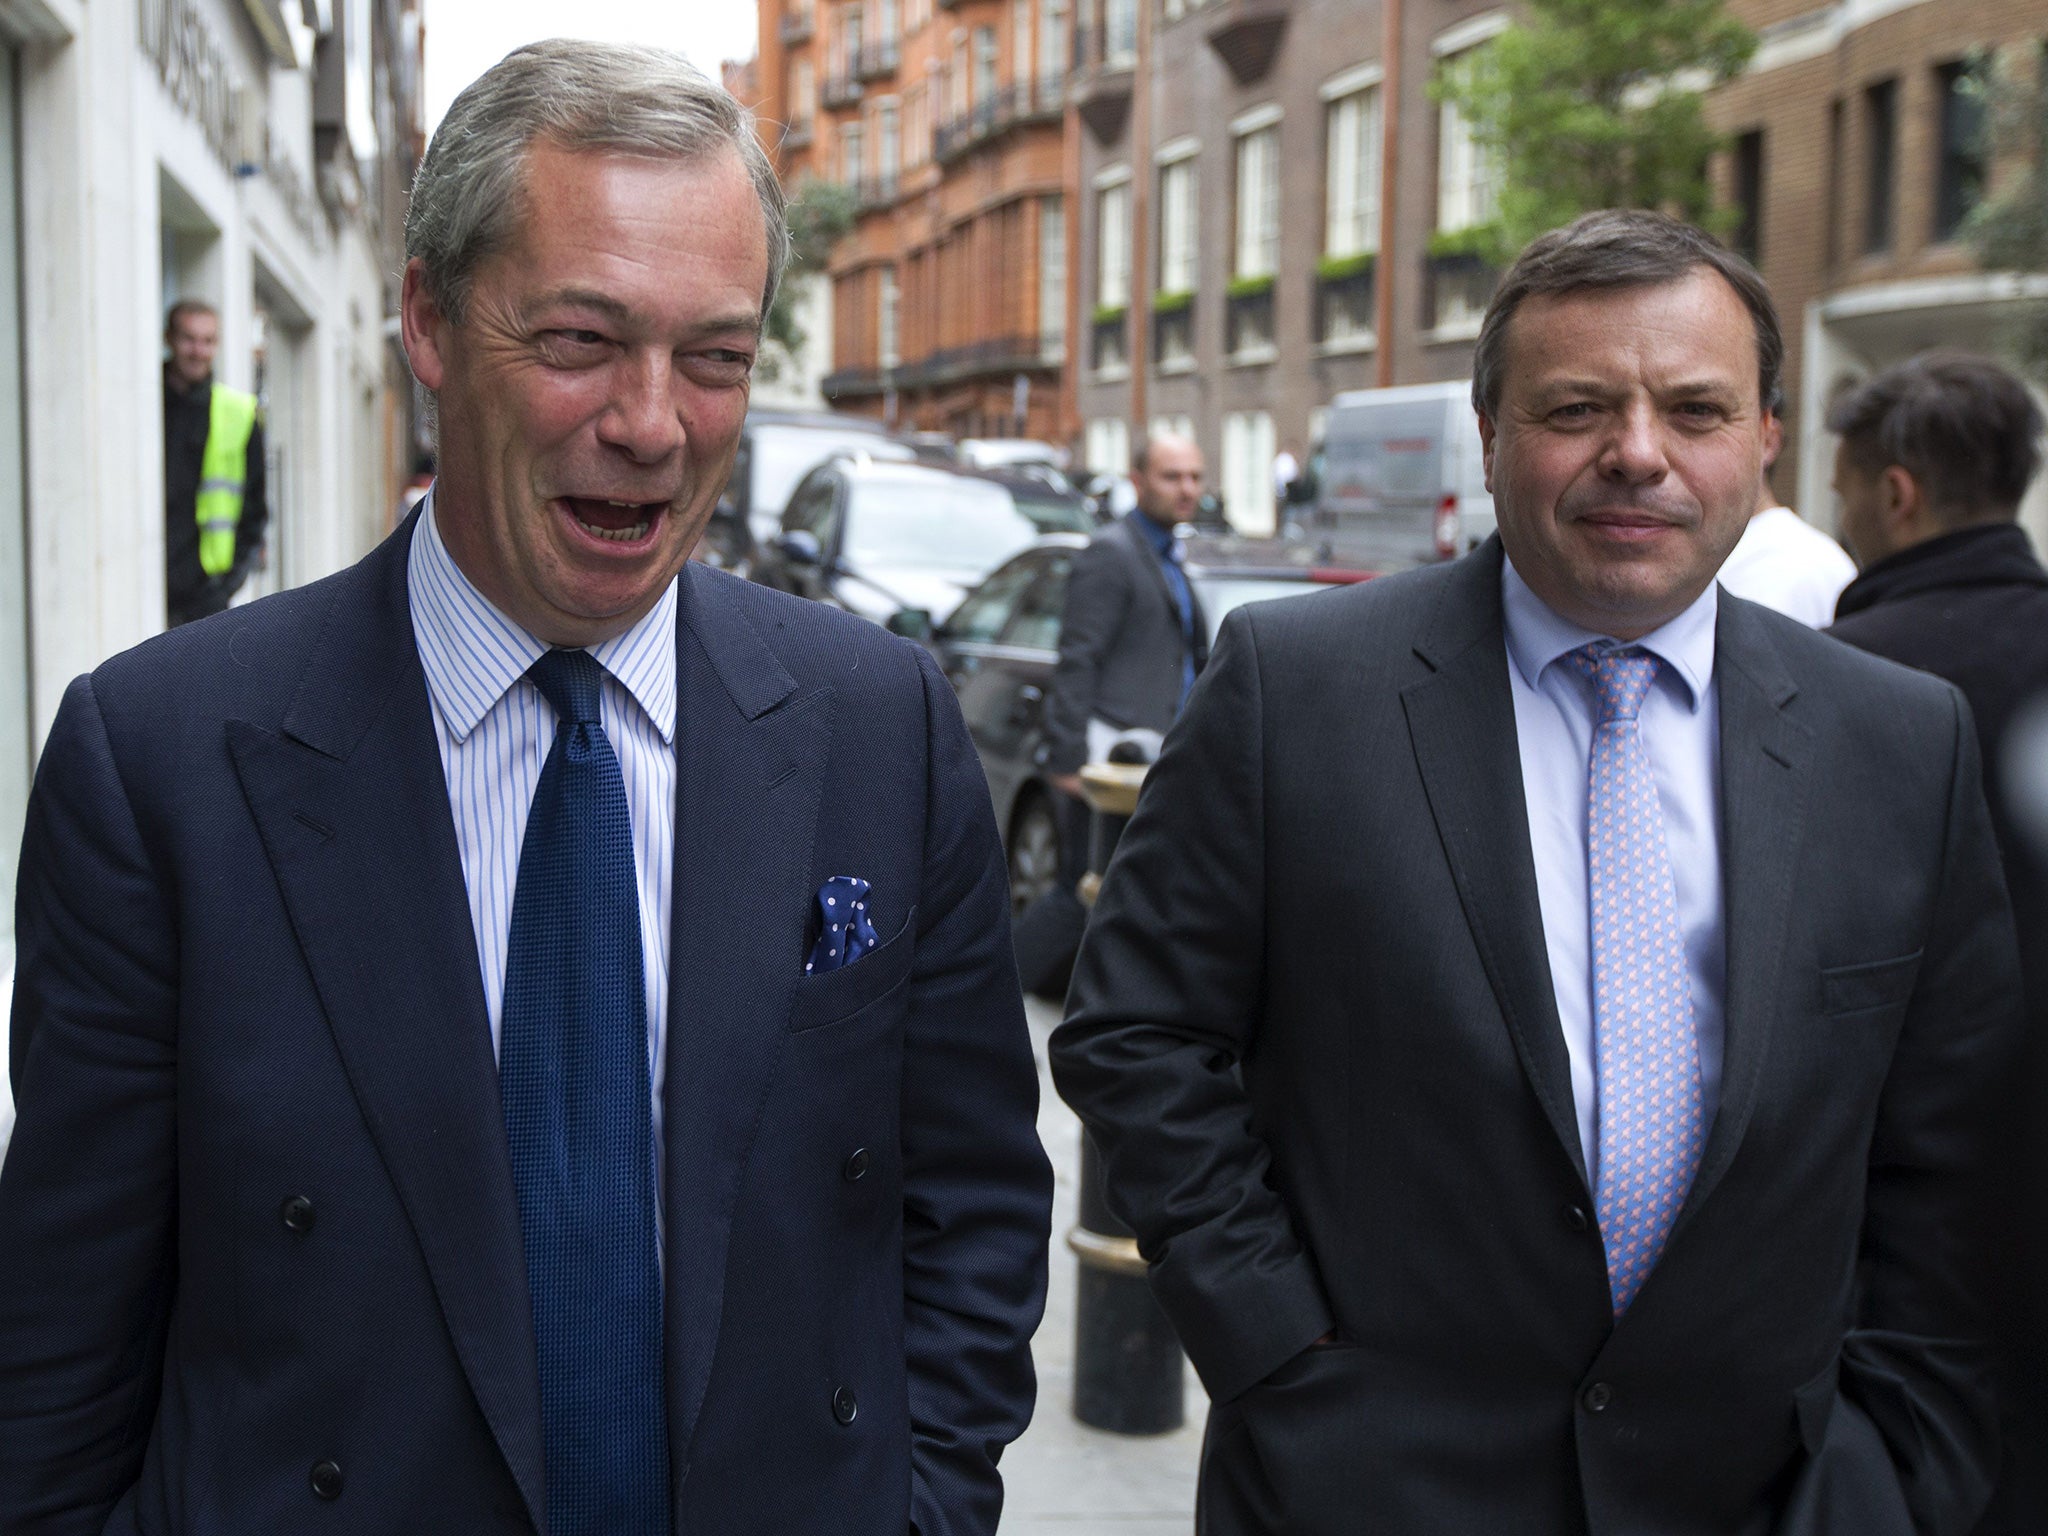 Arron Banks with Ukip leader Nigel Farage